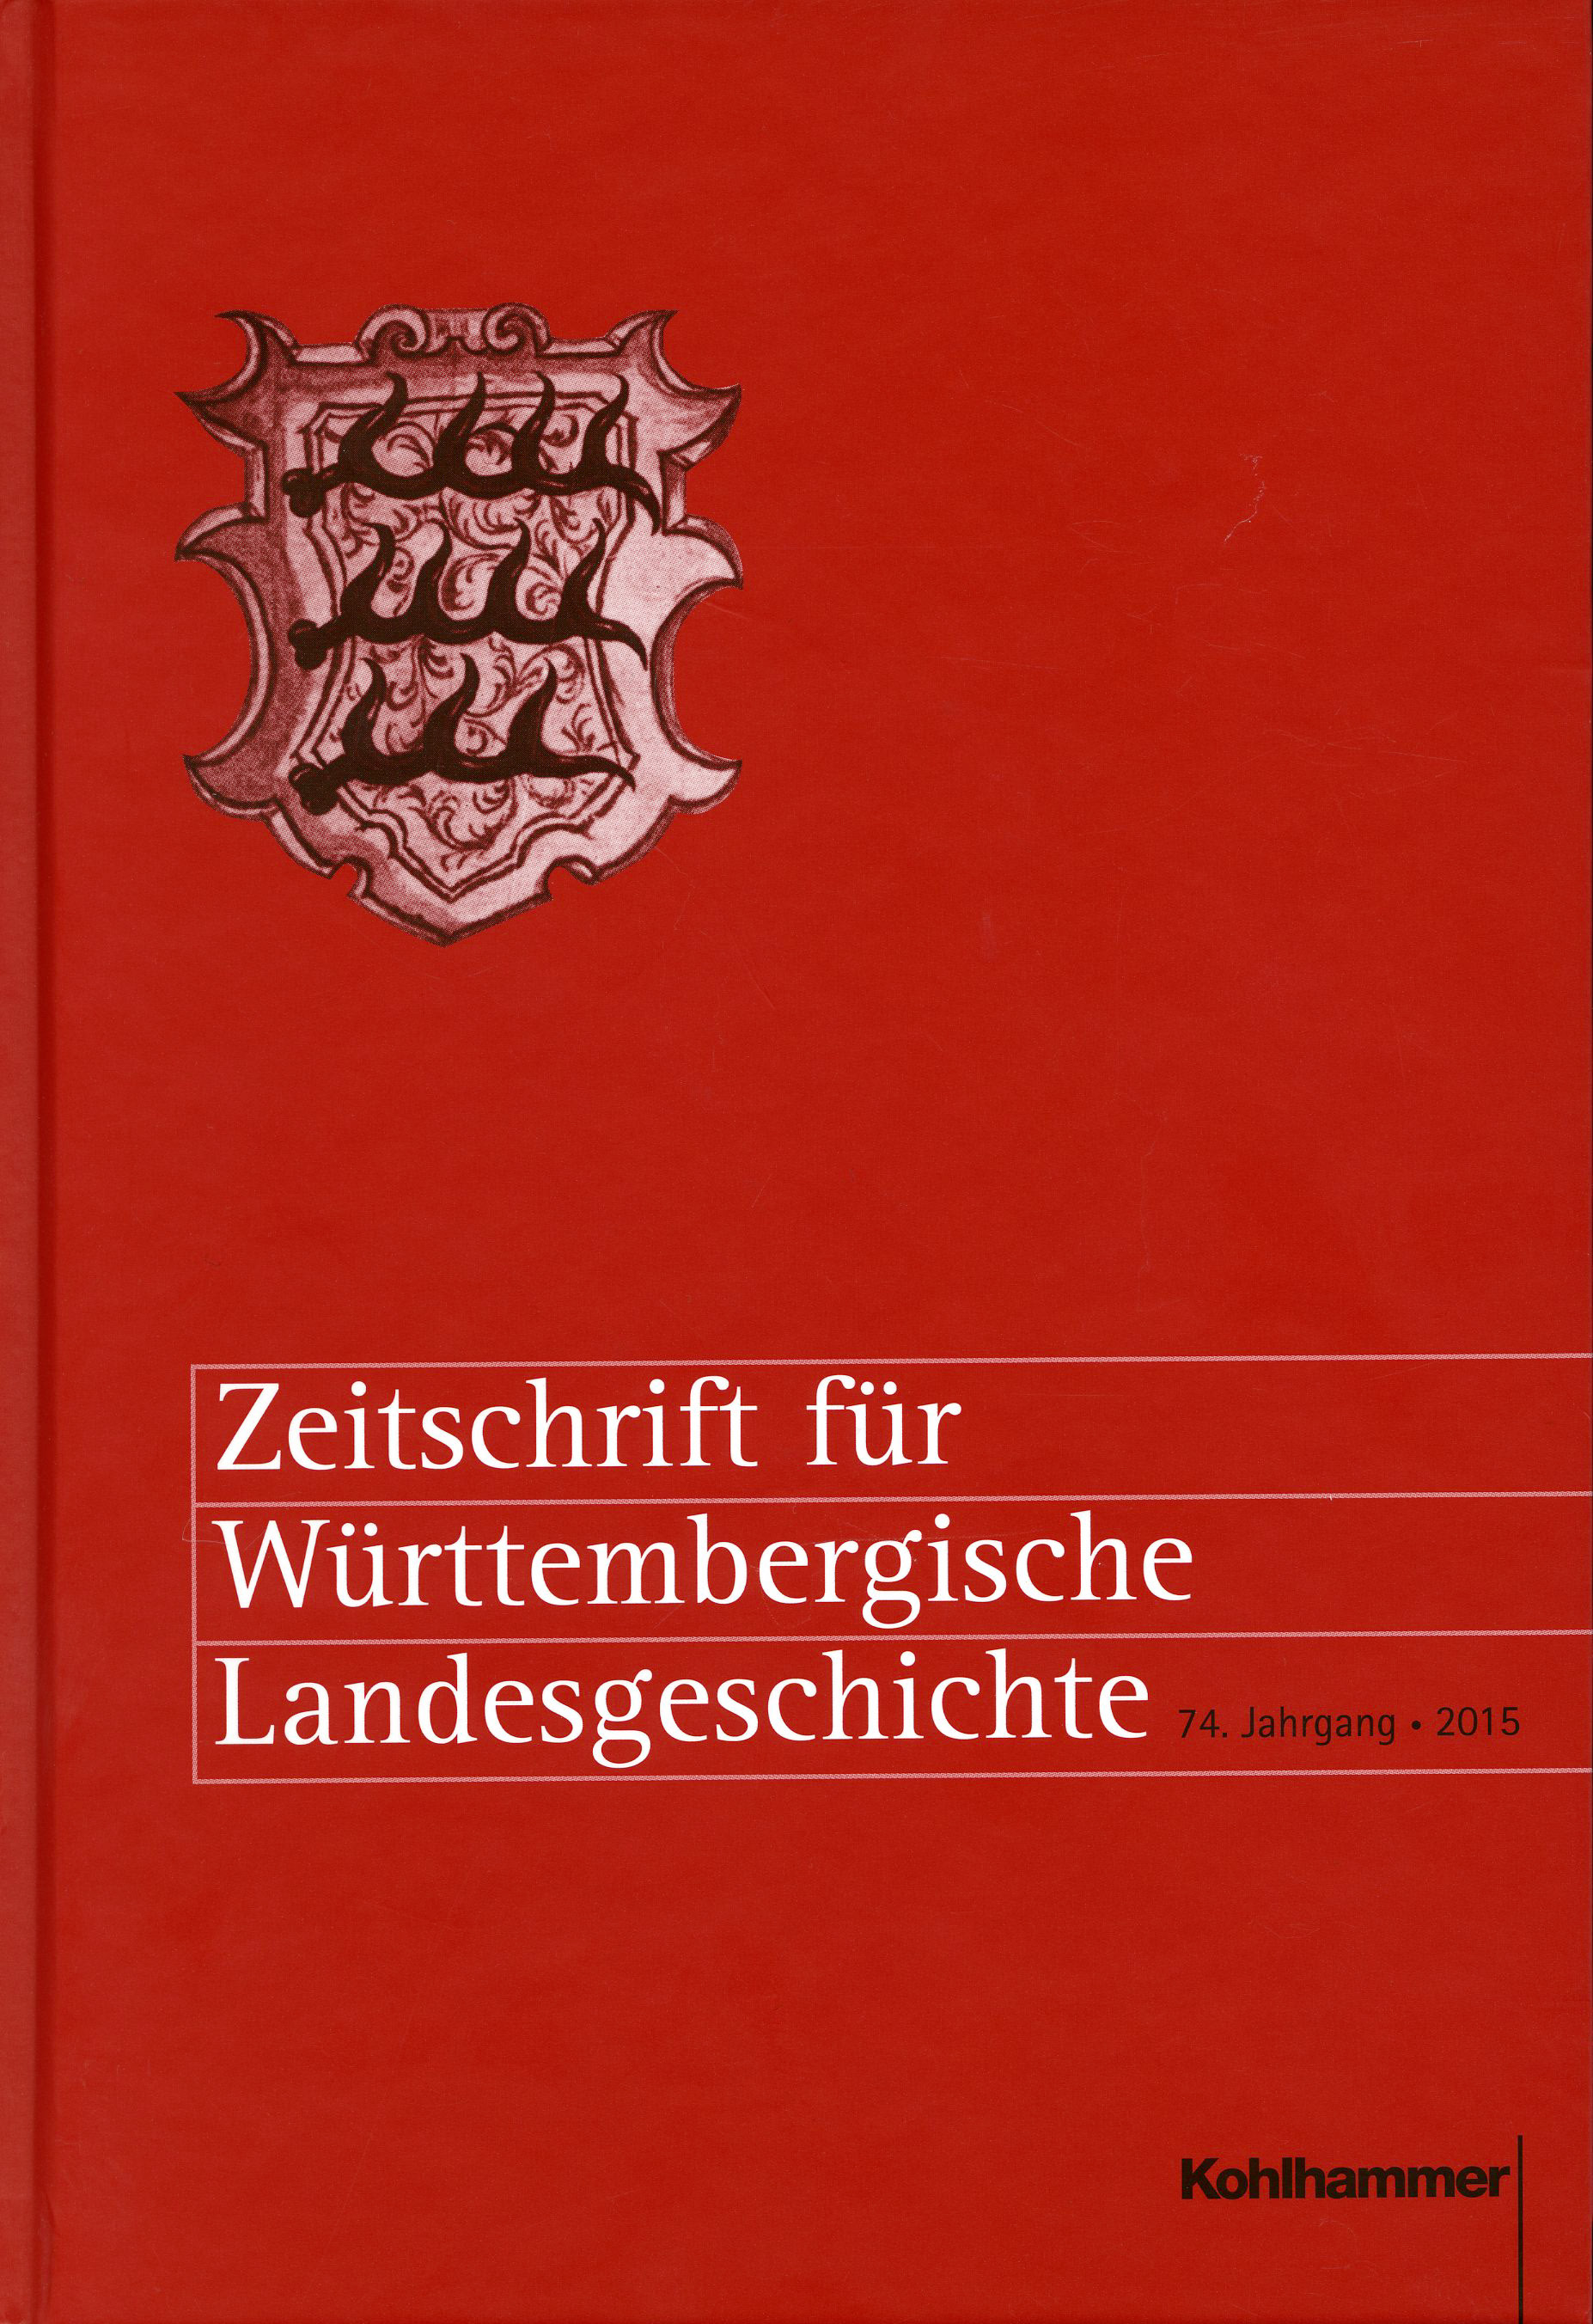                     Ansehen Bd. 74 (2015): Zeitschrift für Württembergische Landesgeschichte
                